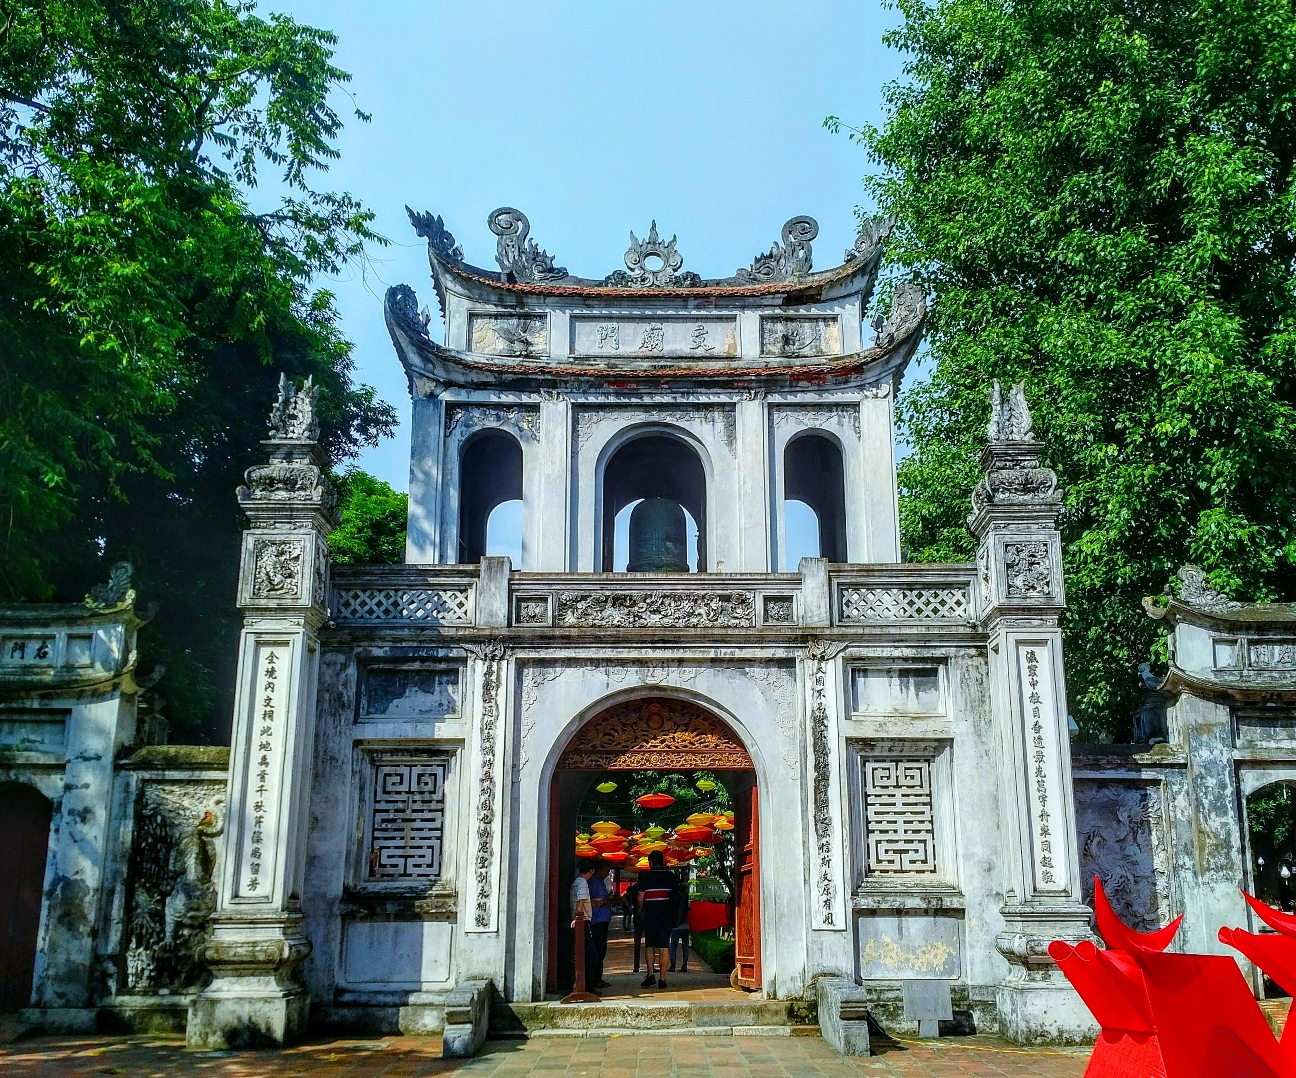  Temple of Literature hanoi